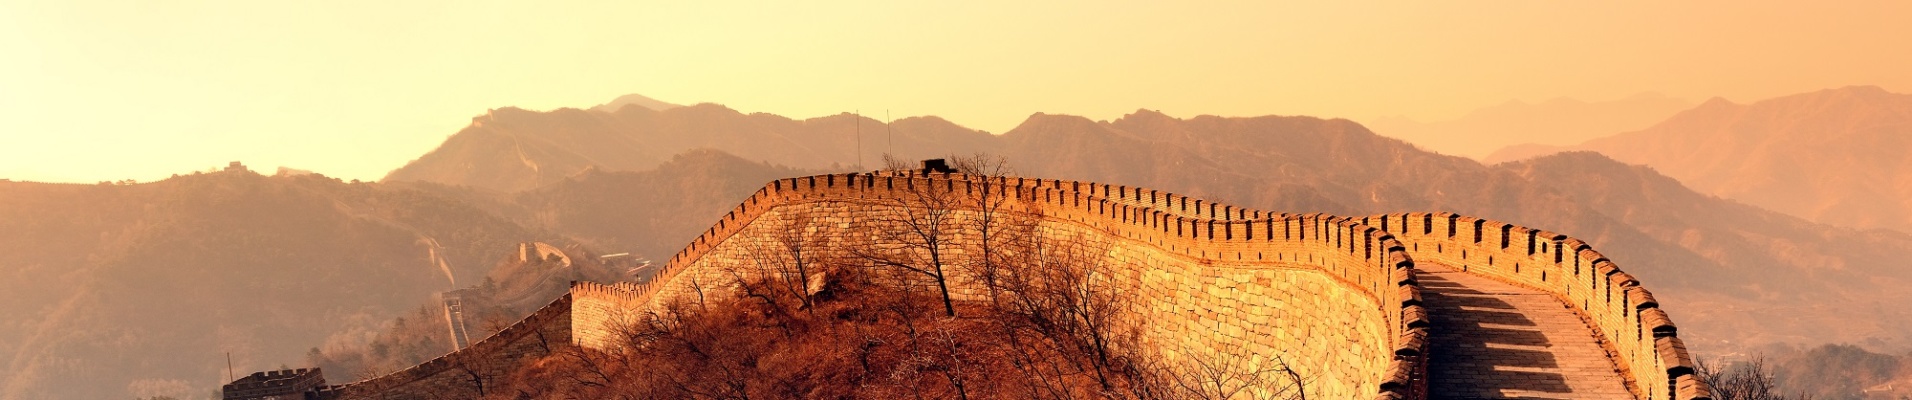 La Grande Muraille de Chine à l'aurore